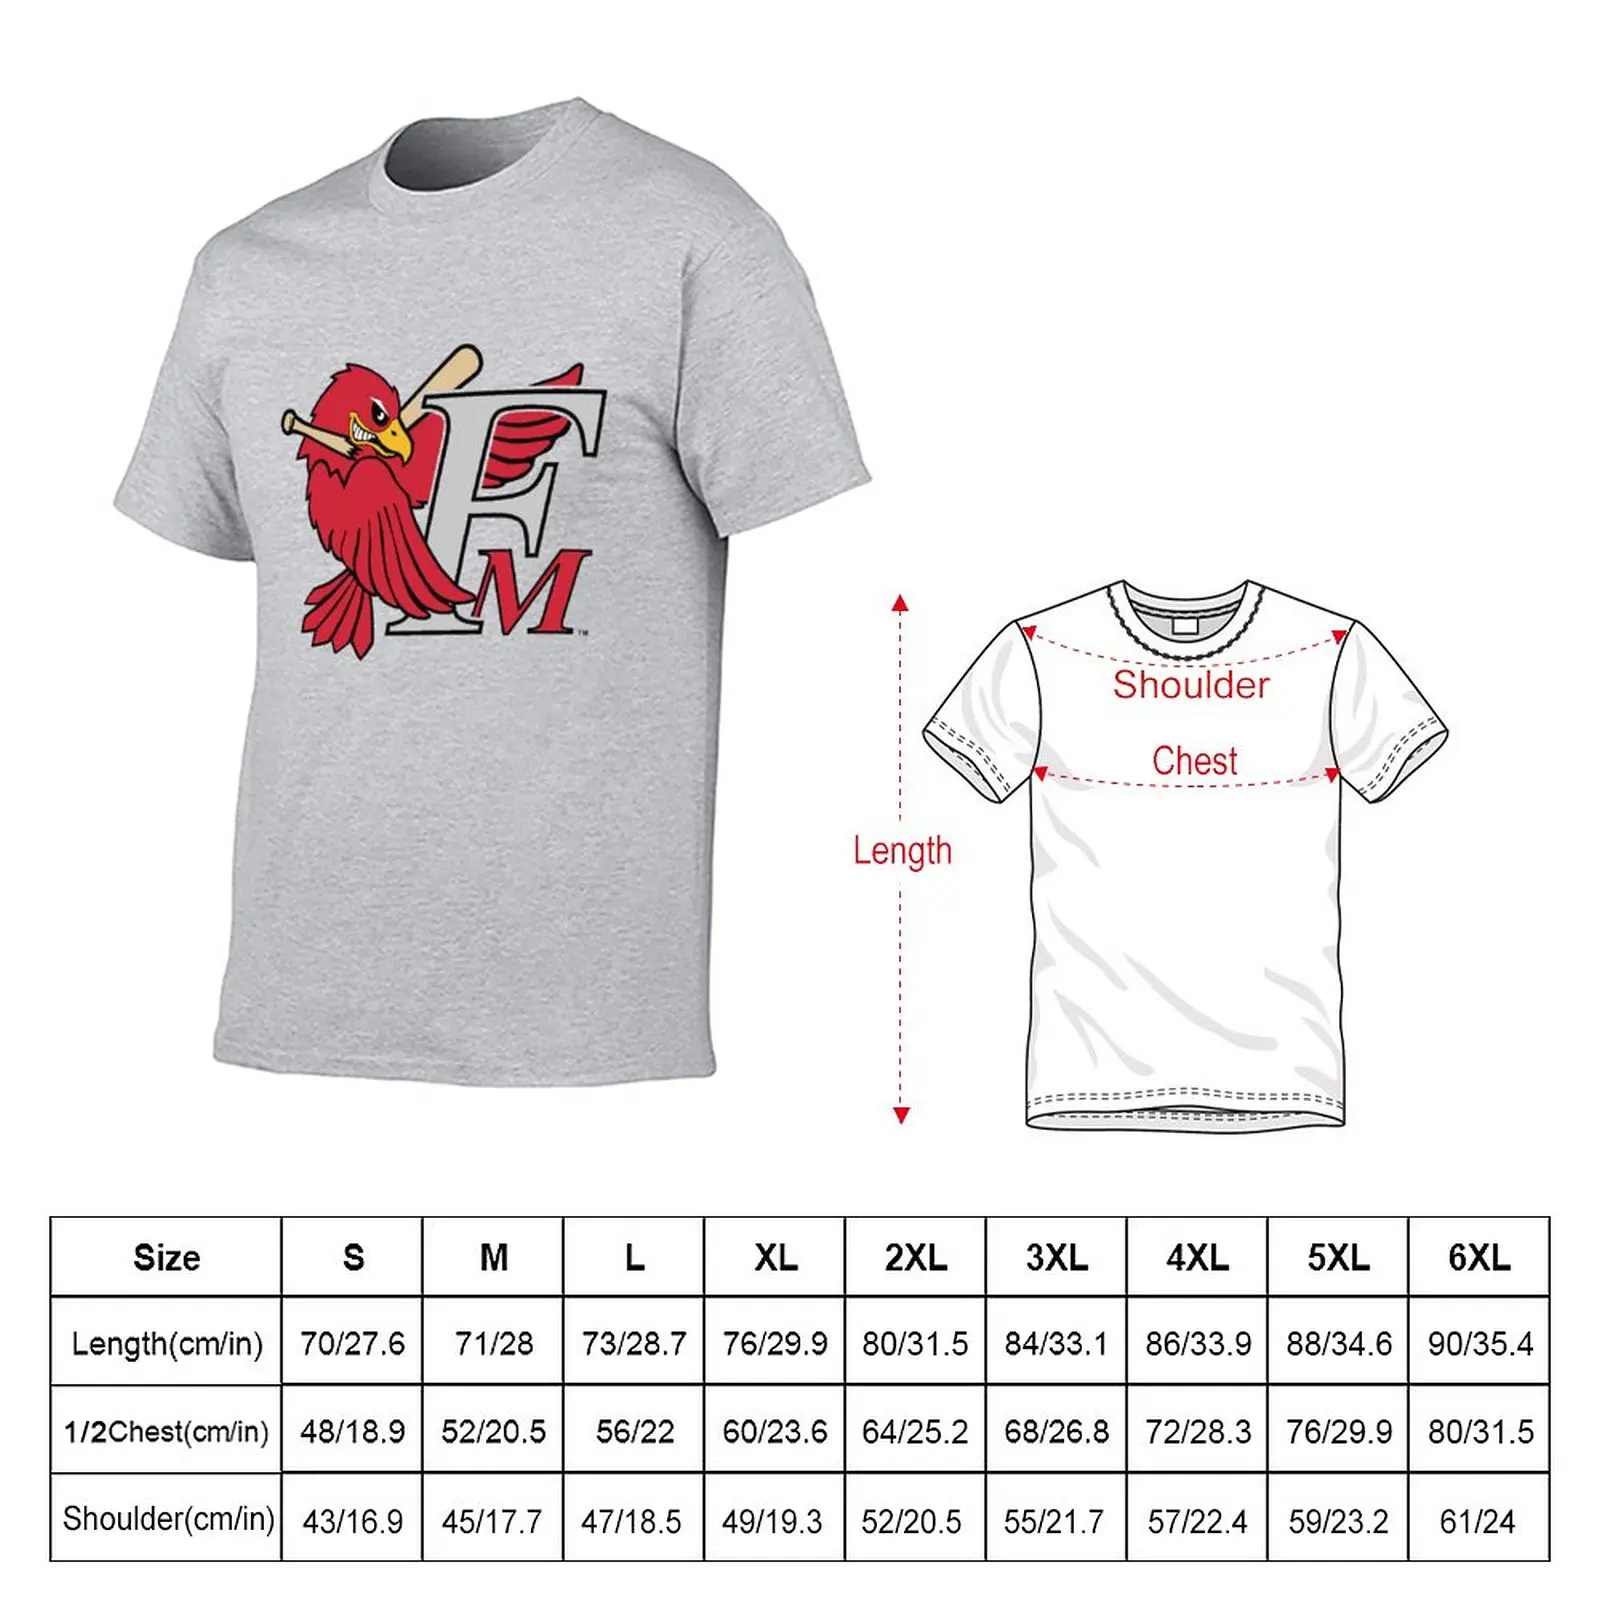 Футболка Fargo Moorhead RedHawks, короткая футболка с аниме, мужская одежда Изображение 1